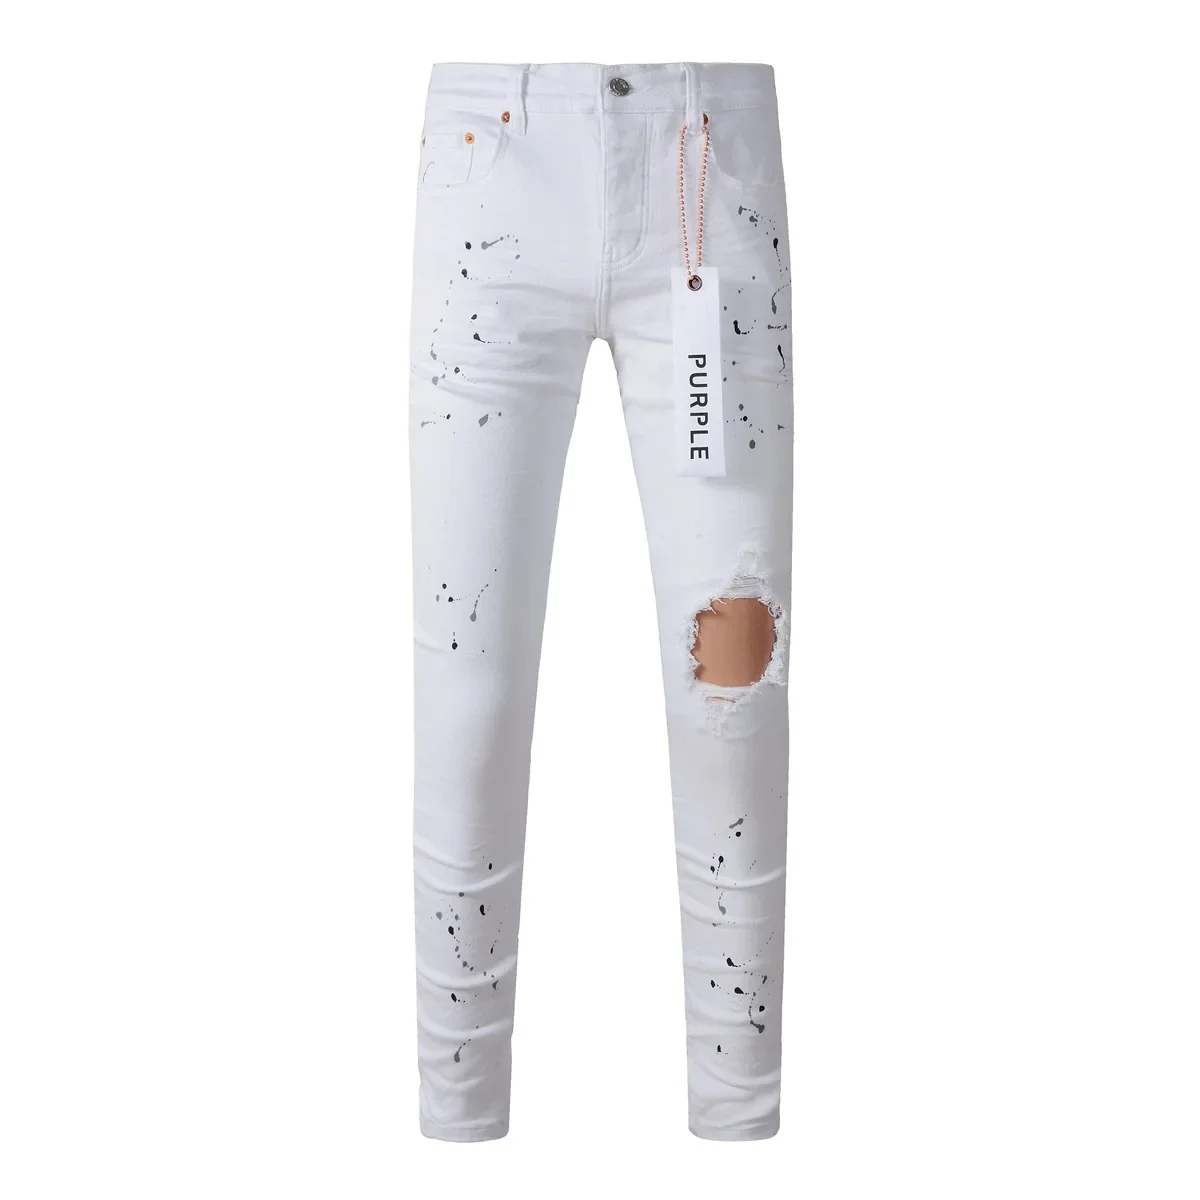 

Фиолетовые брендовые джинсы, модные высококачественные обтягивающие джинсовые брюки с низкой посадкой и эффектом потертости белого цвета